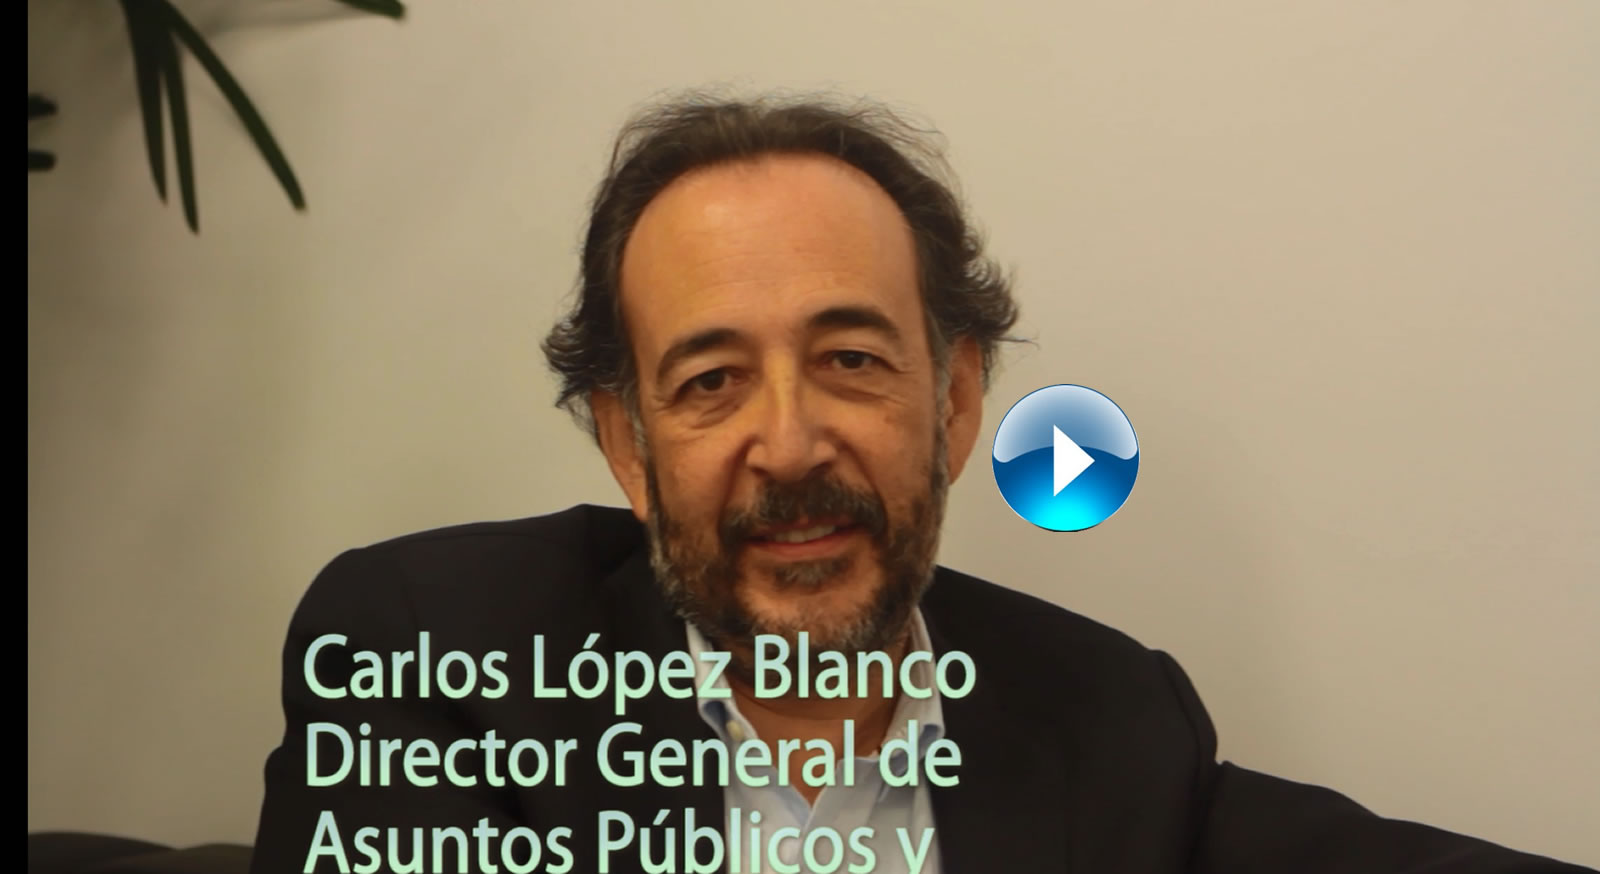 VideoCast  Entrevista a Carlos Lpez Blanco